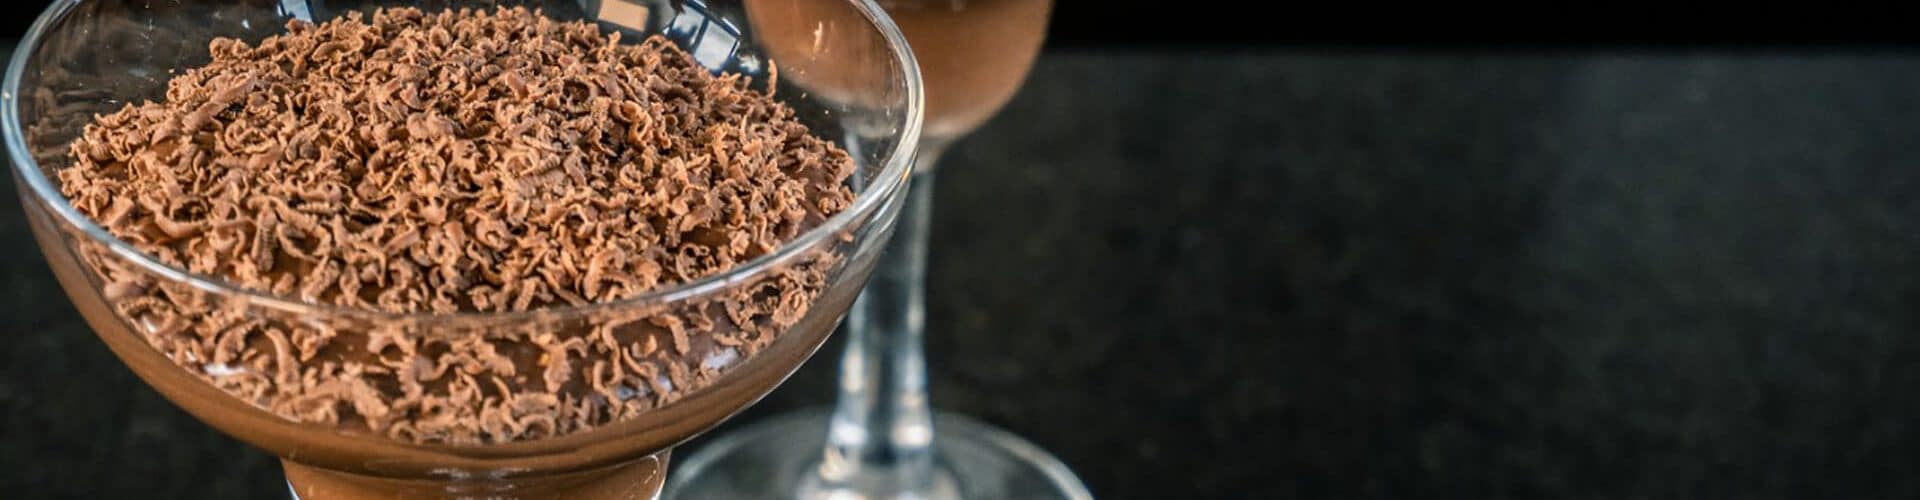 taça de vidro com mousse de chocolate proteico